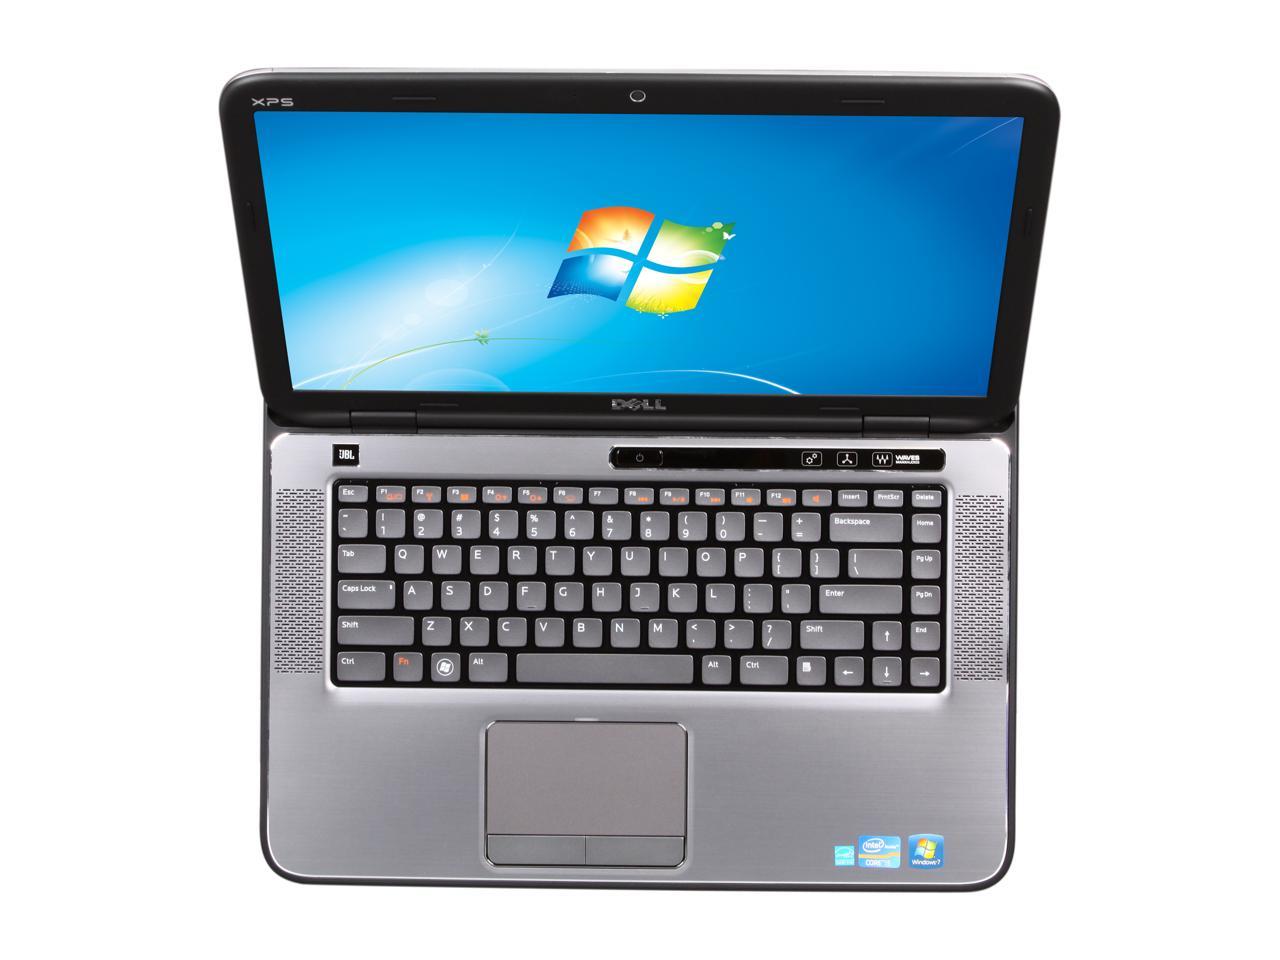 DELL Laptop XPS 15 (L502x) Intel Core i5 2nd Gen 2450M (2.50 GHz) 6 GB